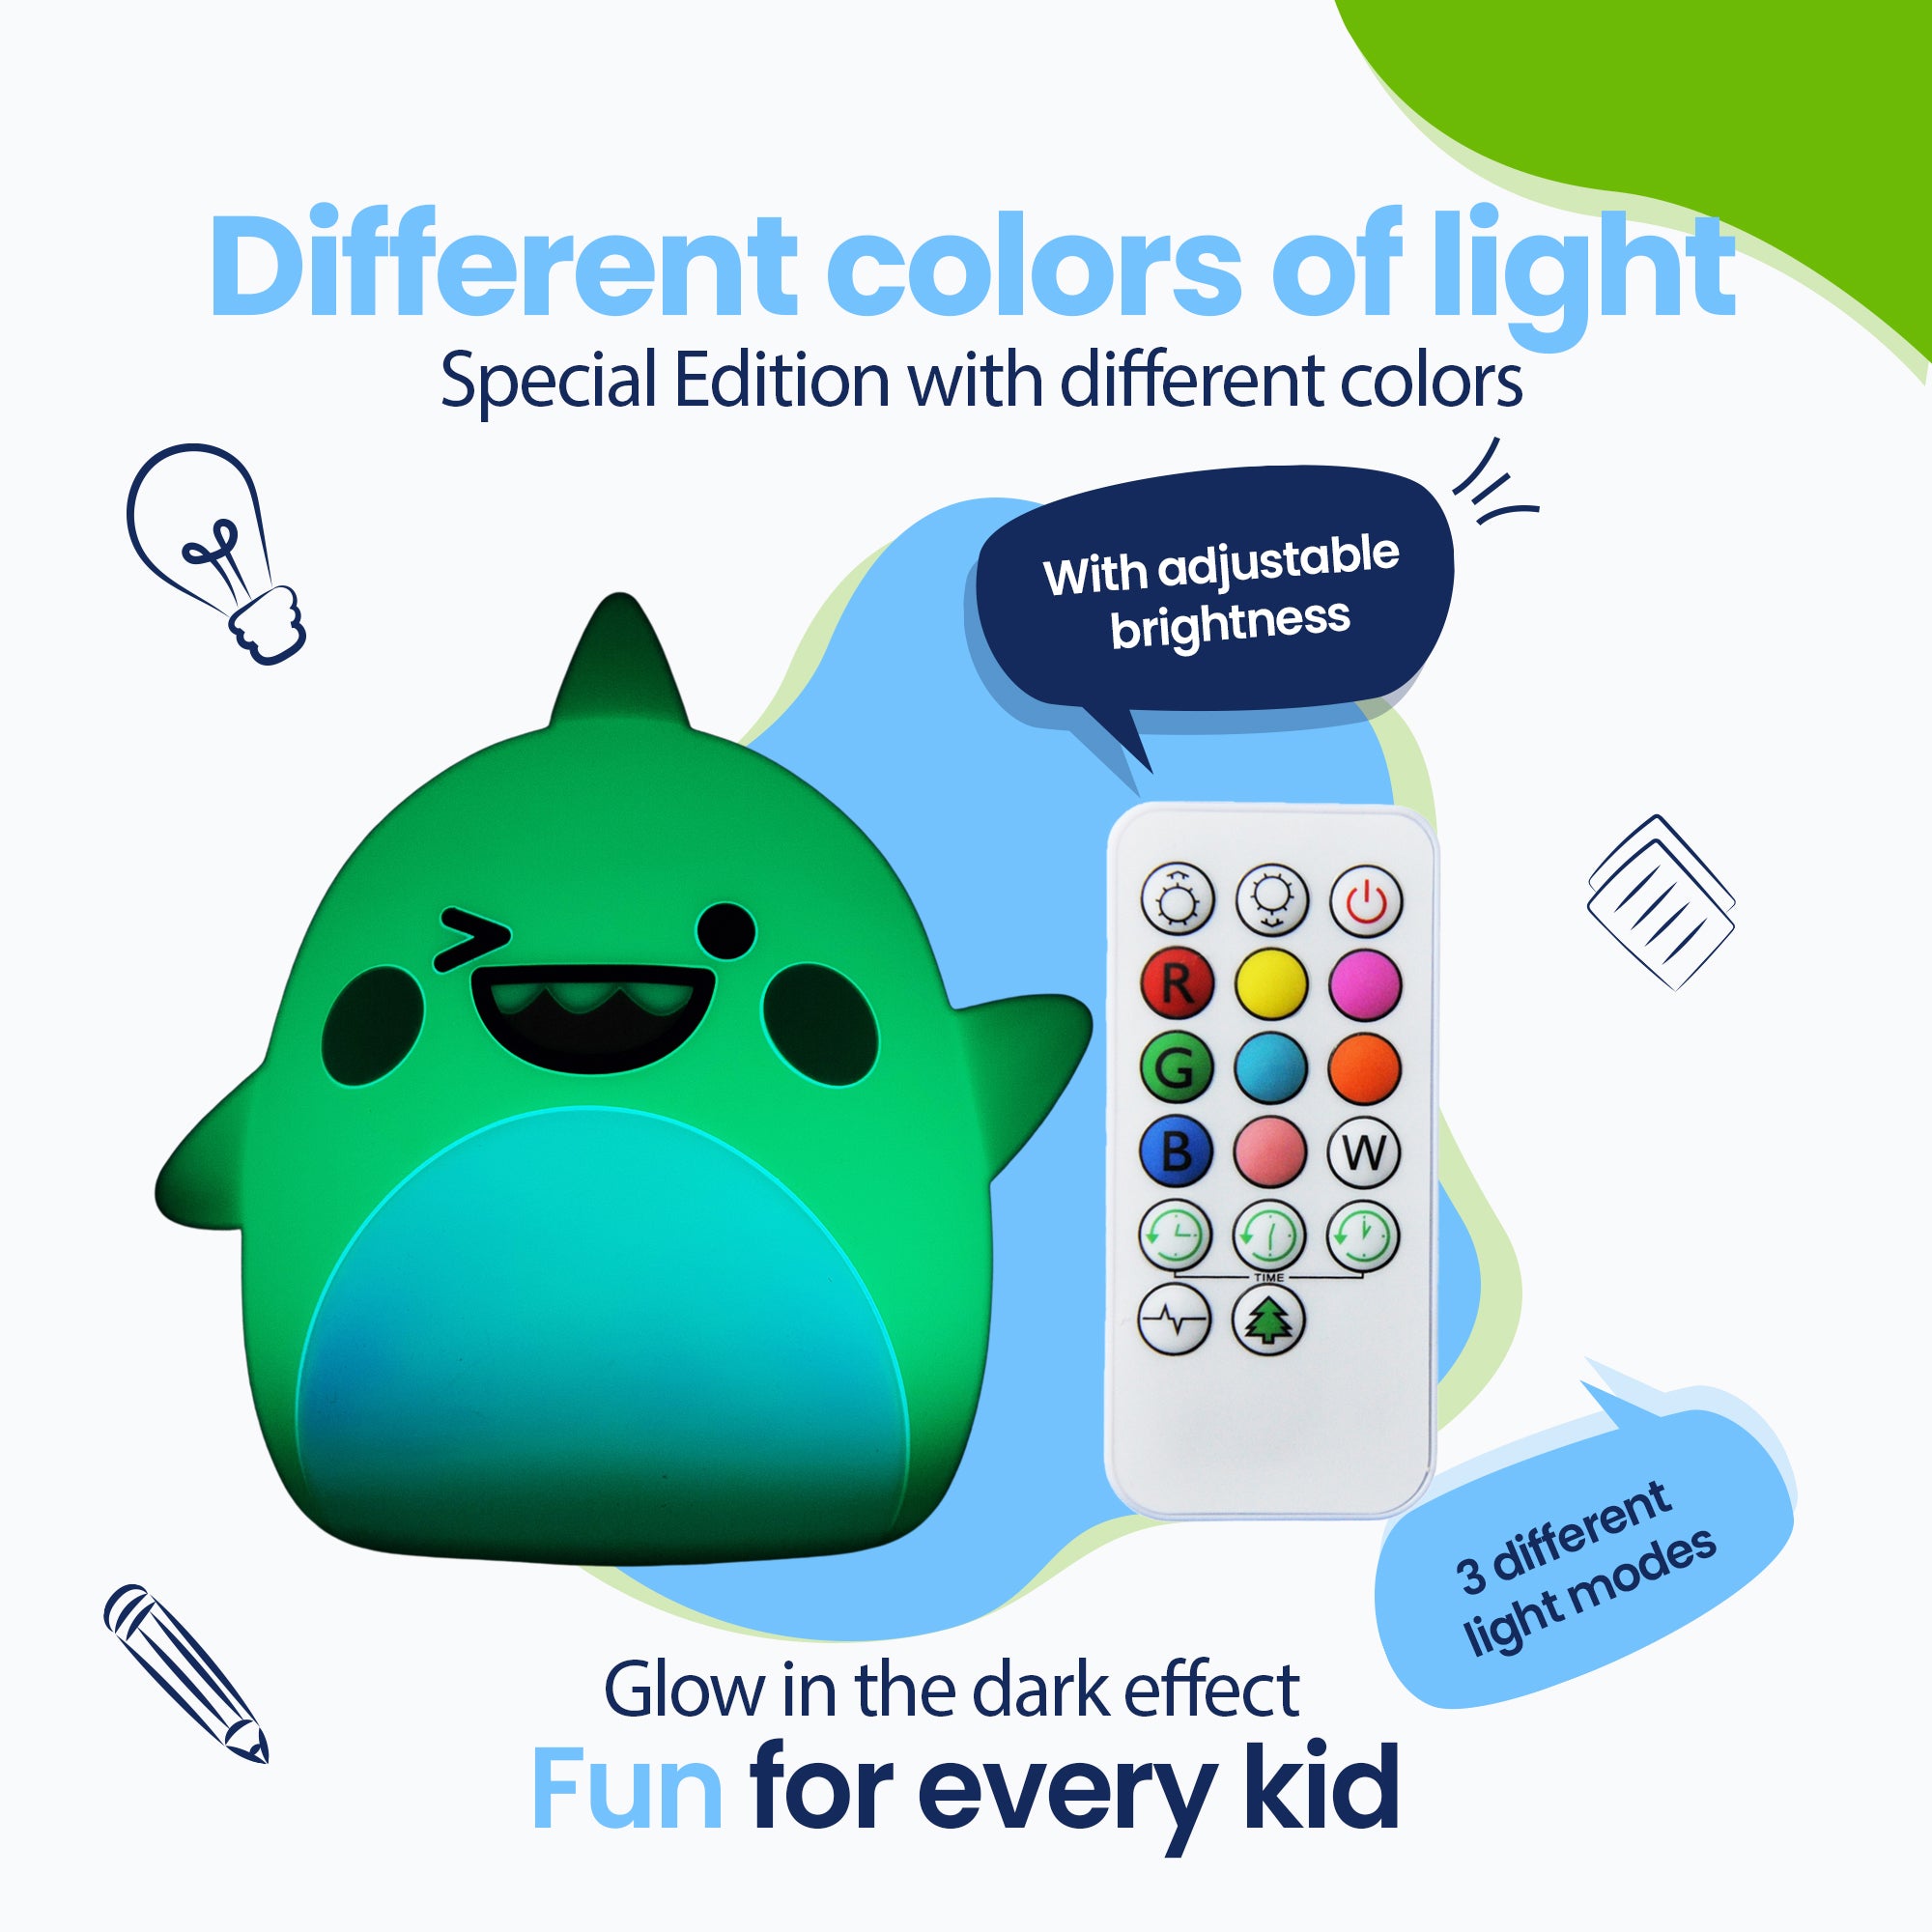 Forskellige farver af lys - Special Edition med forskellige farver - Glow in the Dark-effekt - 3 forskellige lyse strande - Sjovt for hvert barn